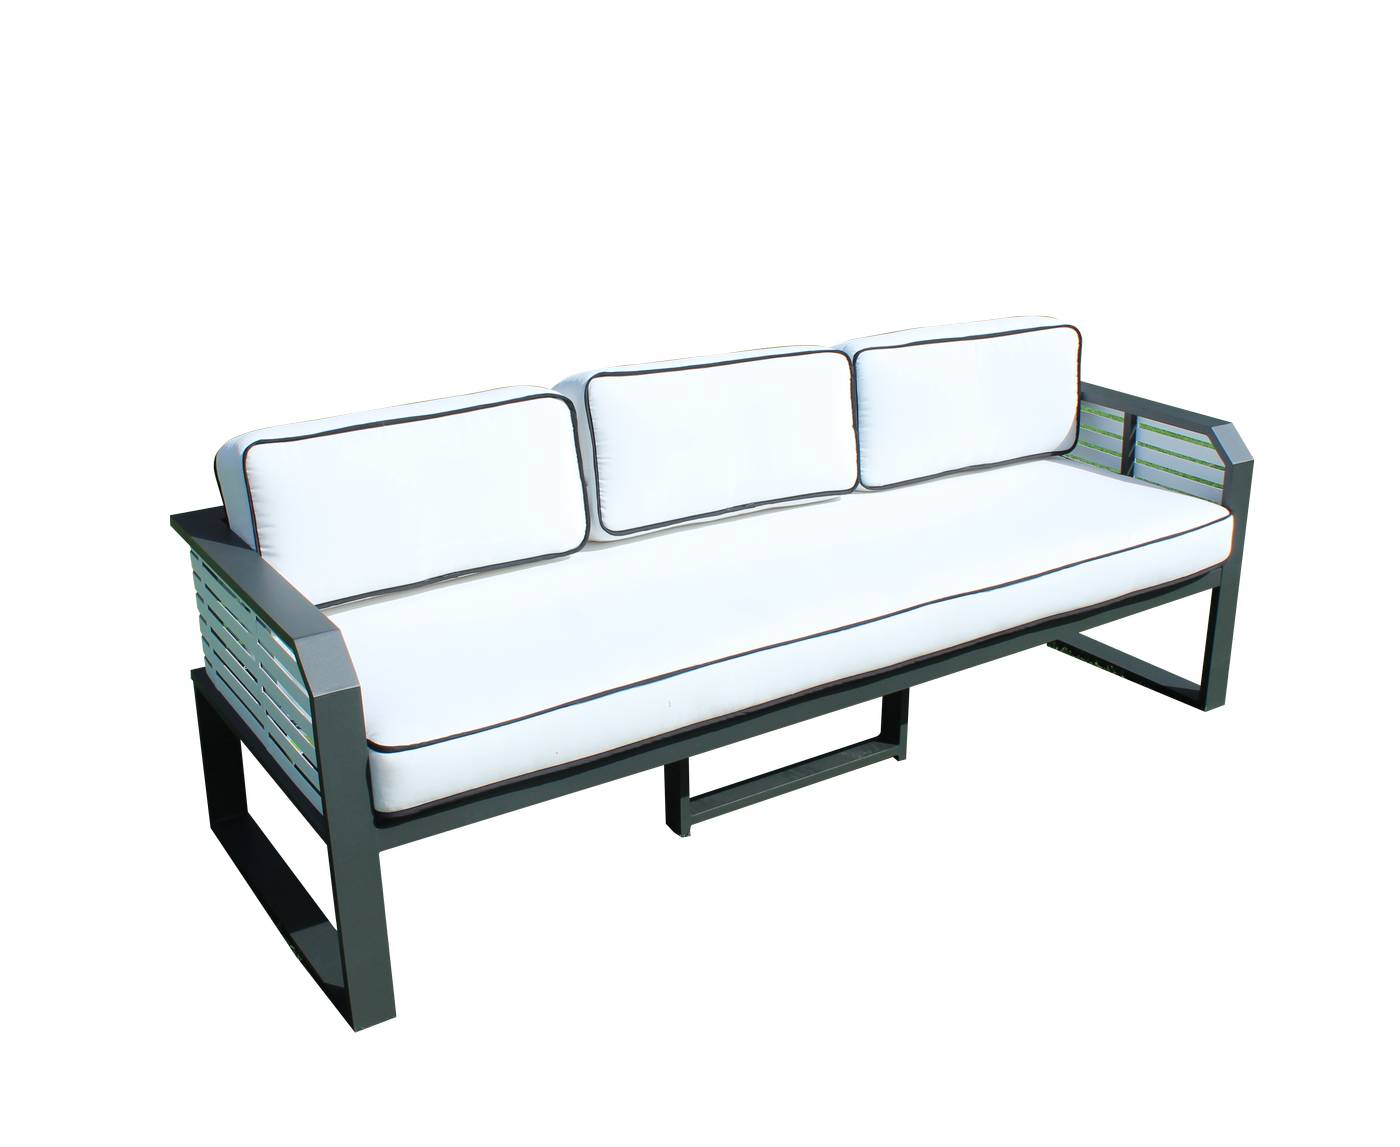 Set Aluminio Sira-10 - Coqueto conjunto de alumnio bicolor: 1 sofá de 3 plazas + 2 sillones + 2 reposapiés + 1 mesa de centro.